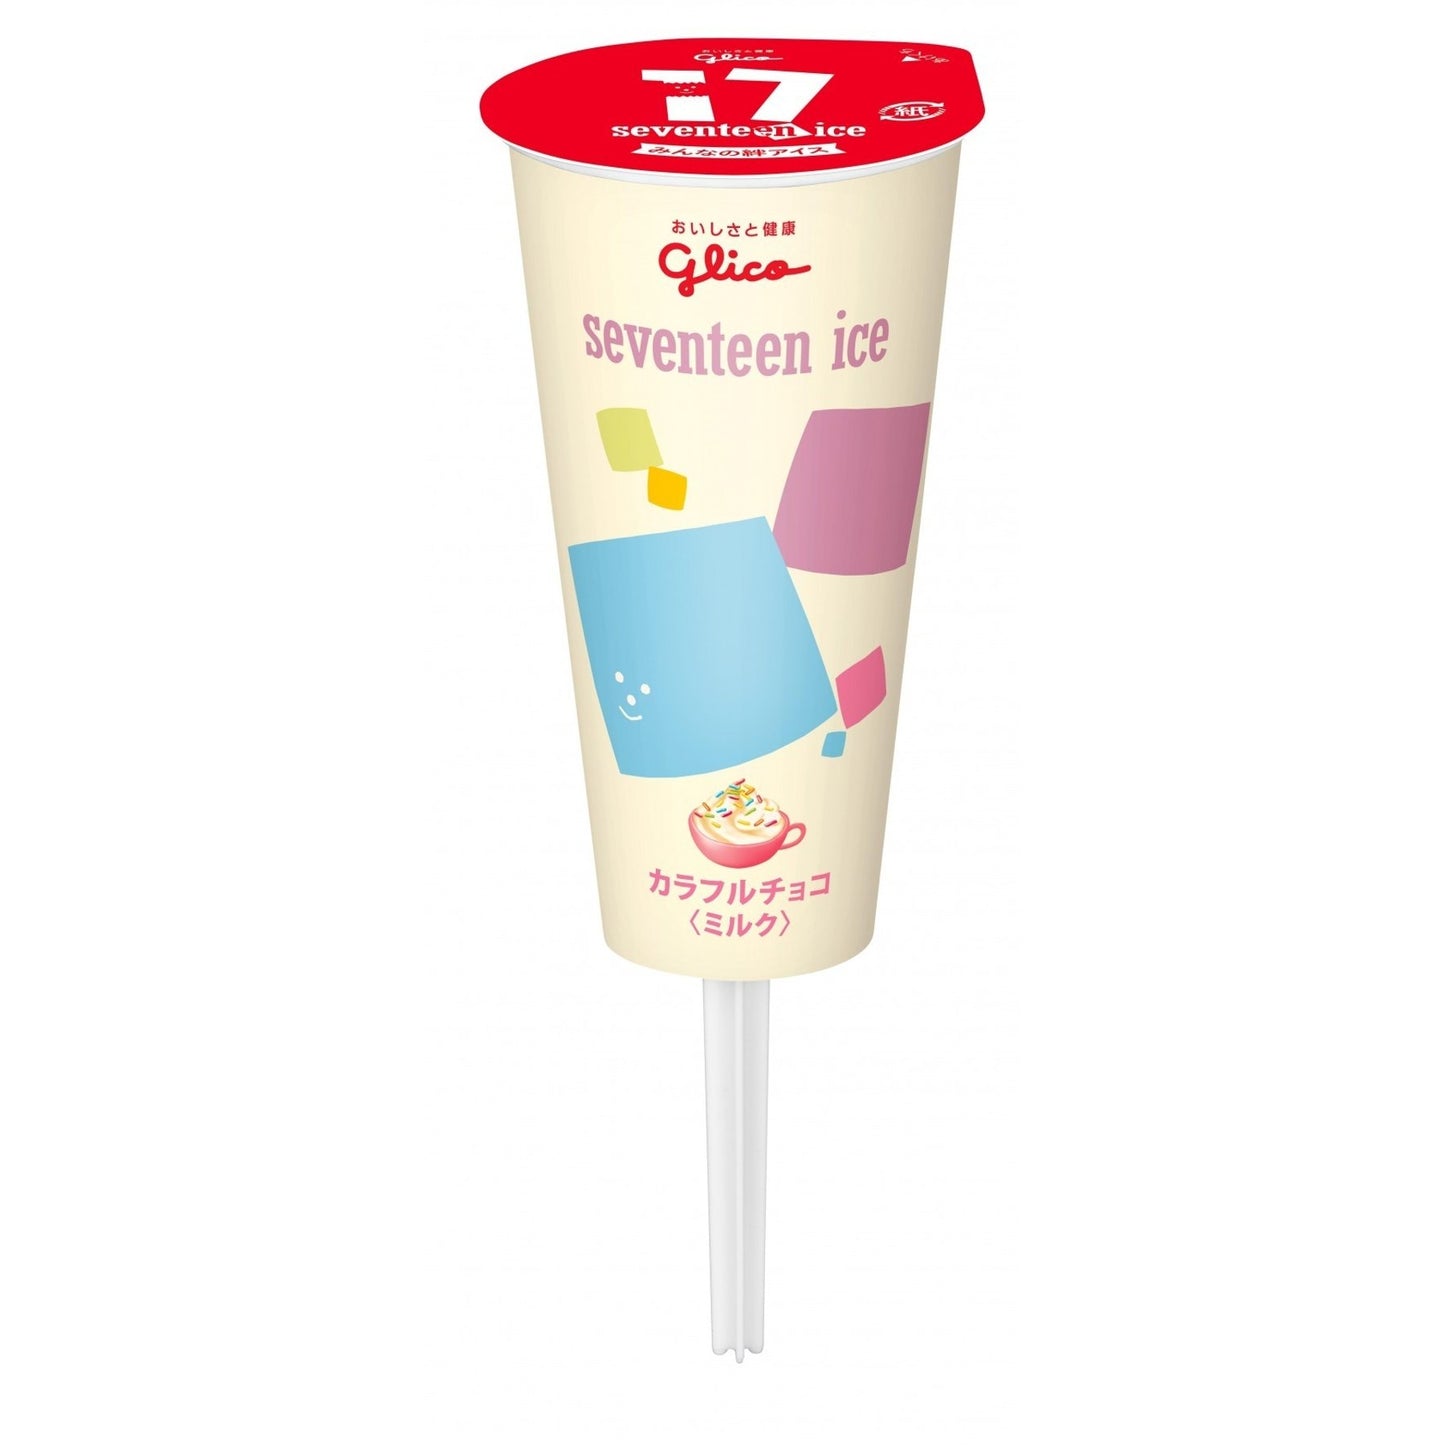 [Glico][Seventeen Ice Colorful Chocolate Milk]